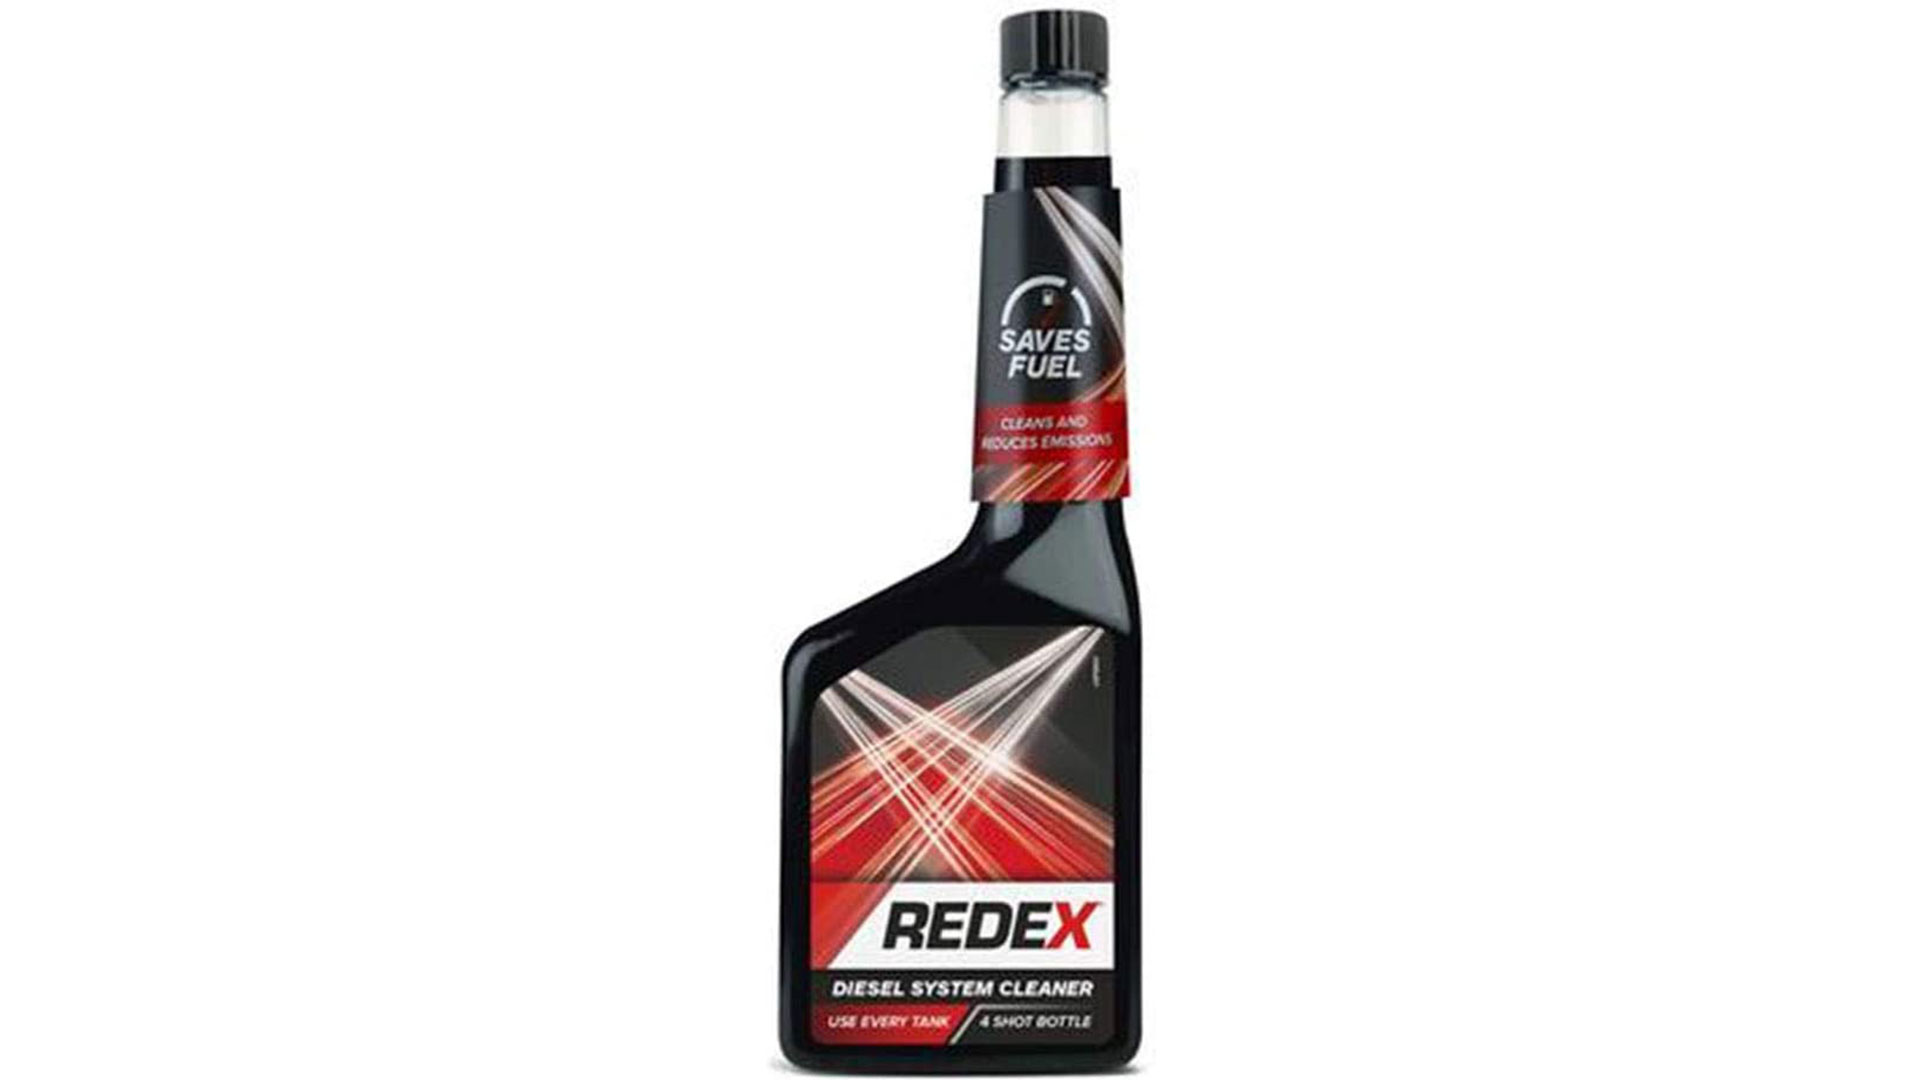 redex diesel system cleaner